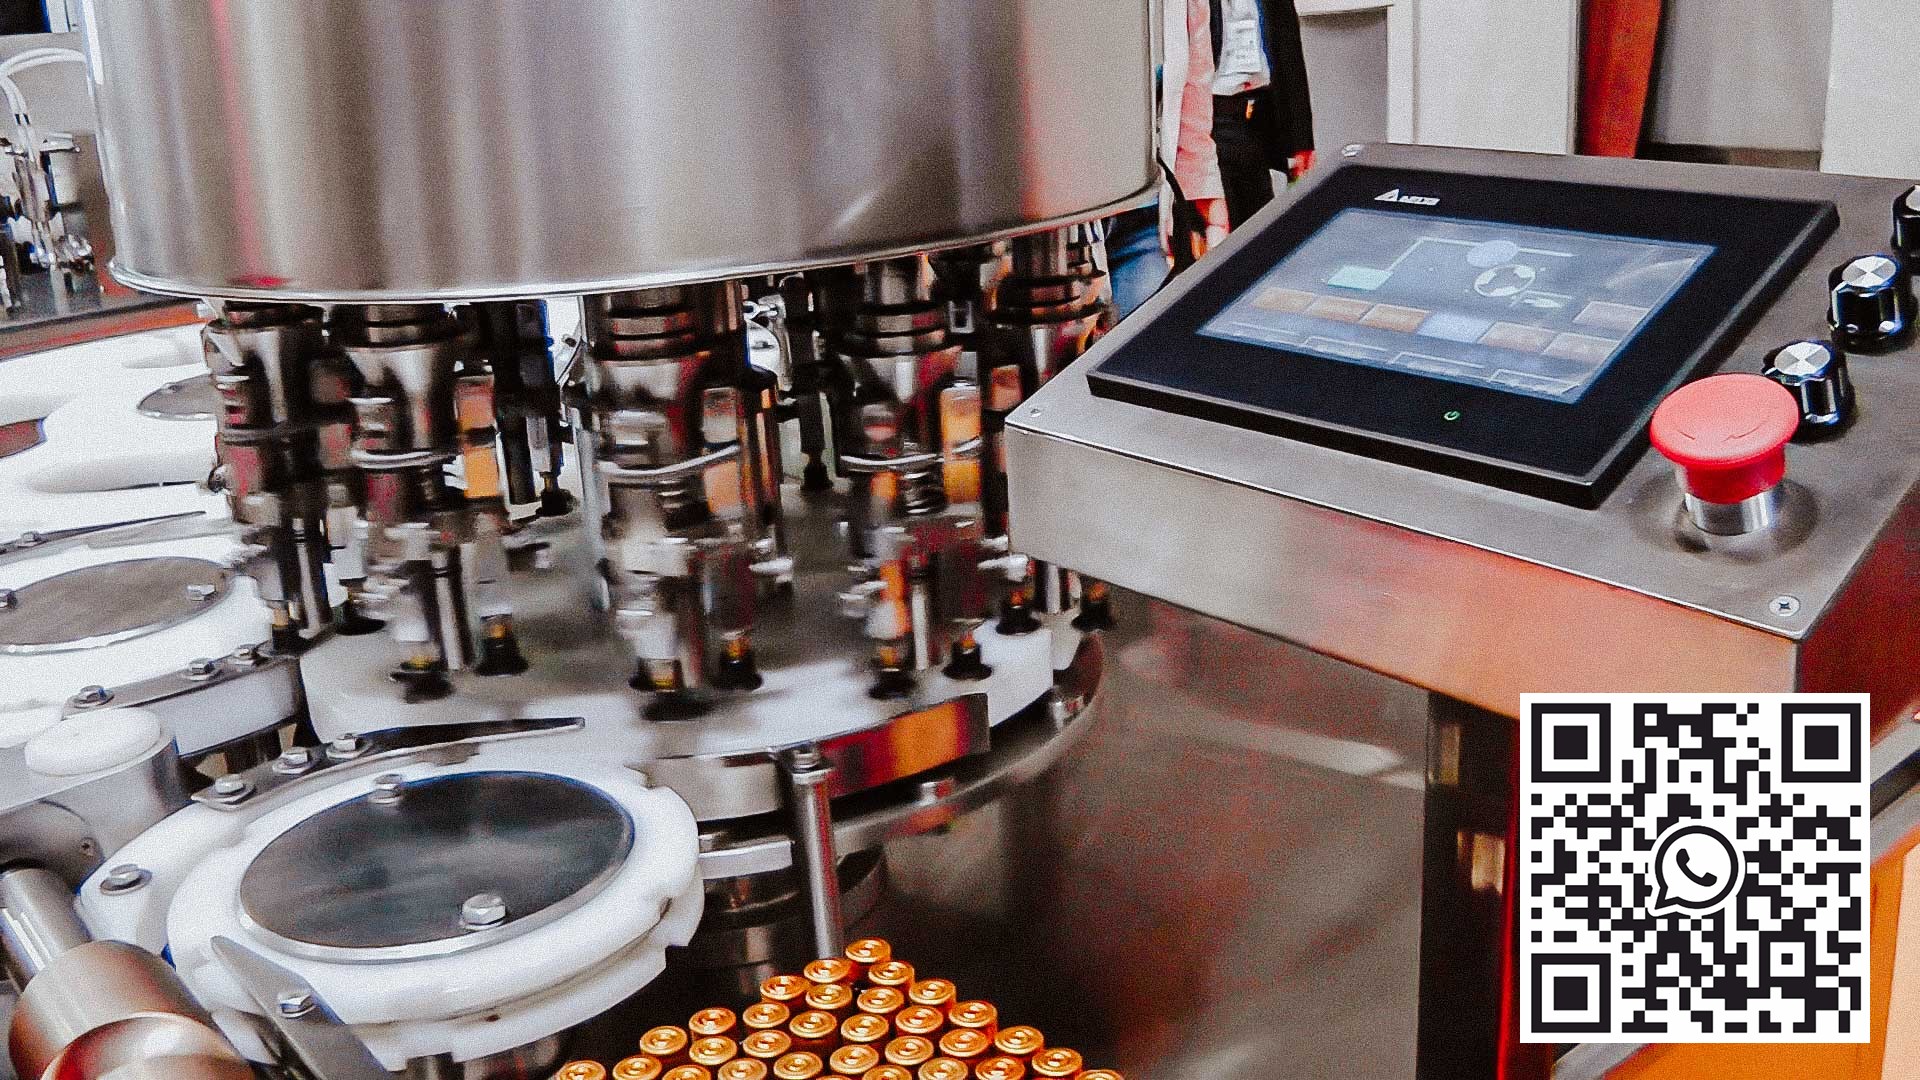 Vysokorychlostní automatické zařízení pro plnění tekutých produktů do penicilinových lahví s hliníkovými uzávěry